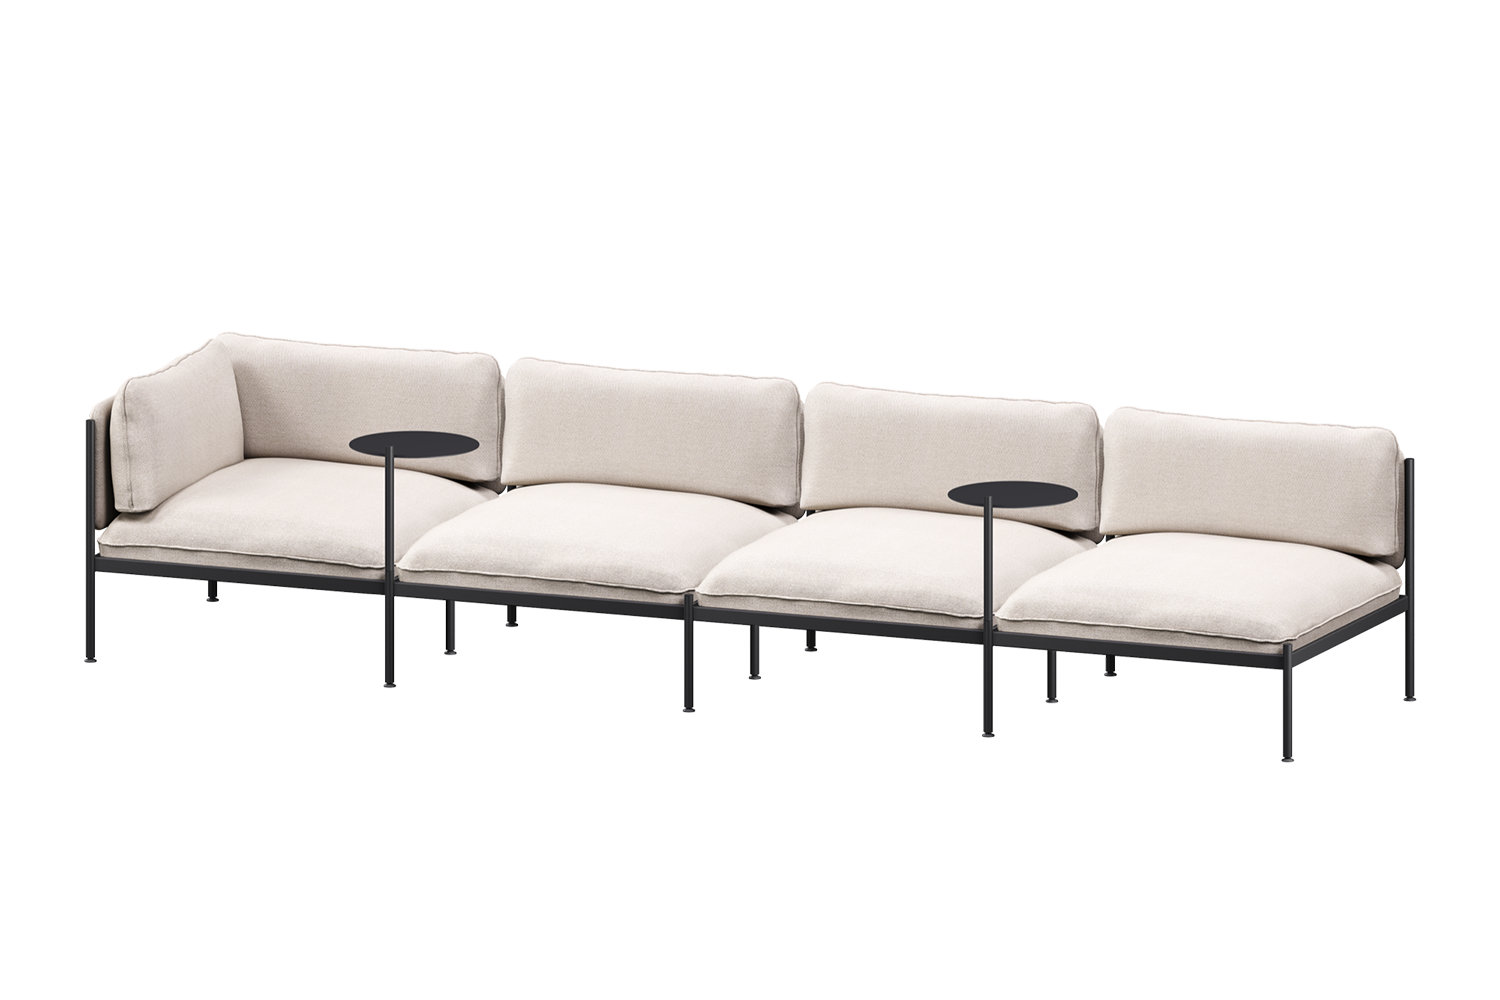 Toom Modular Sofa 4-Sitzer Konfiguration 1a in Oatmilk Beige  präsentiert im Onlineshop von KAQTU Design AG. 4er Sofa ist von Noo.ma